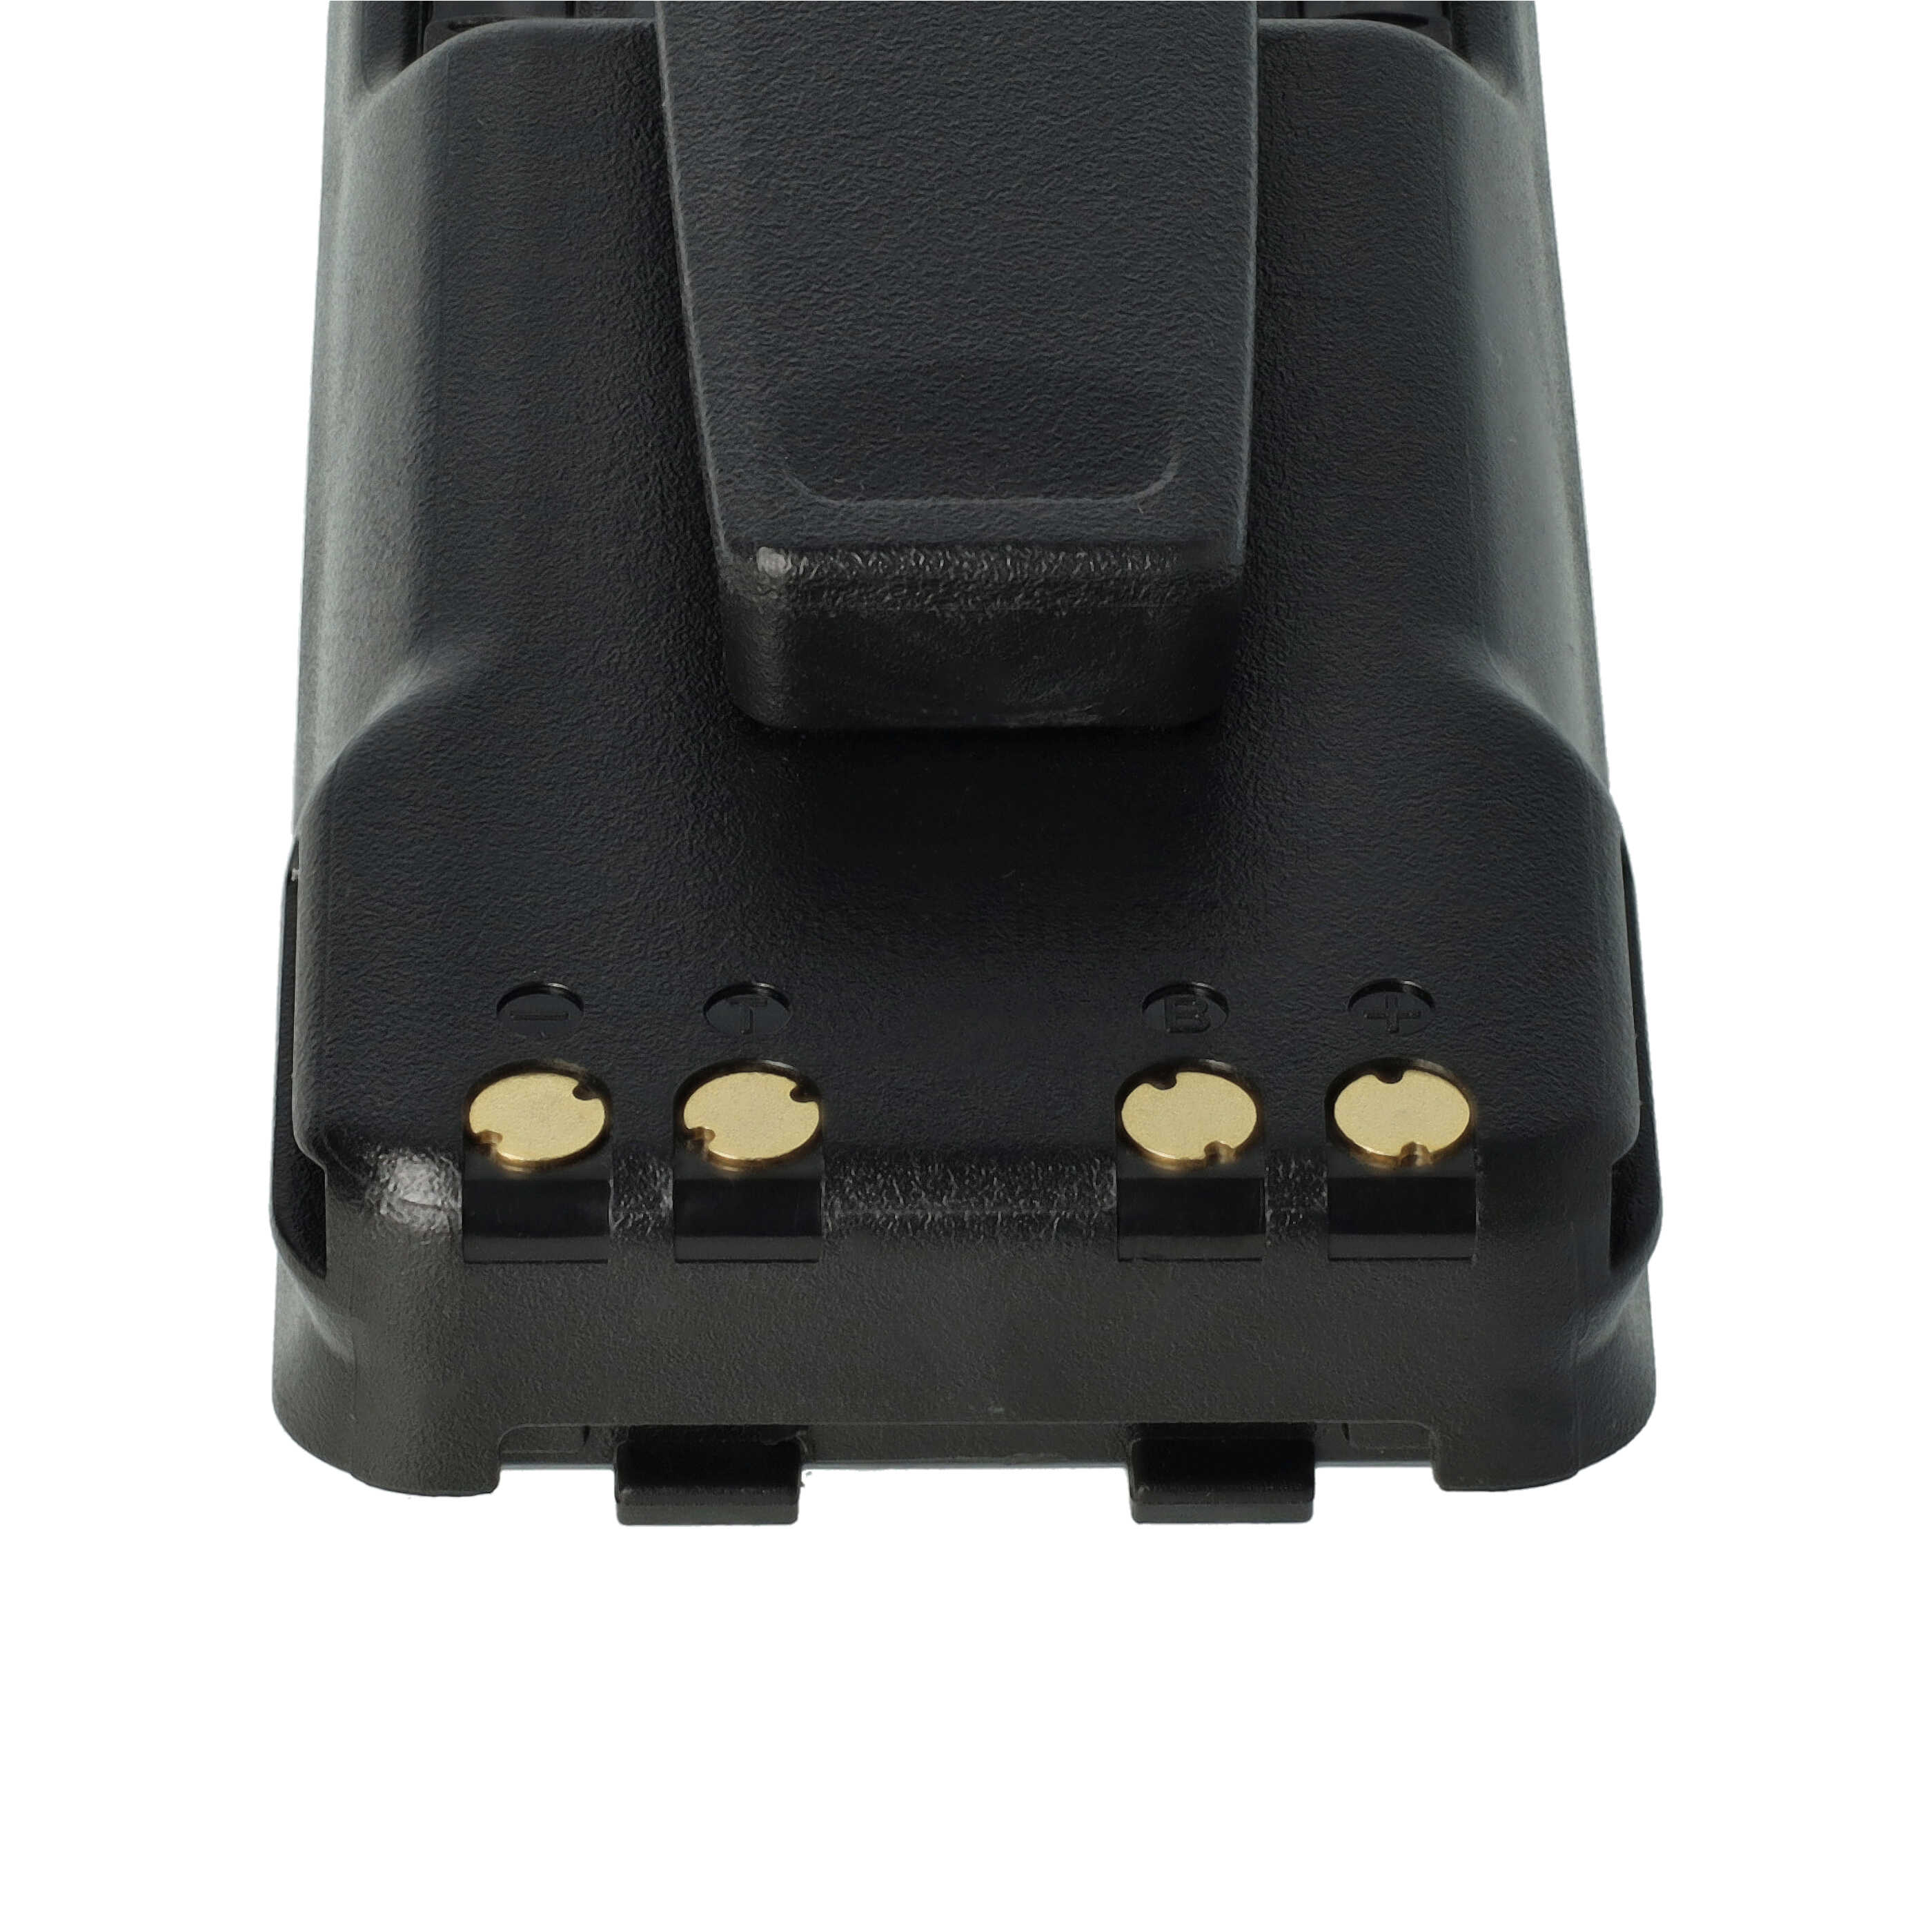 Akumulator do radiotelefonu zamiennik Icom BP-280LI - 2250 mAh 7,4 V Li-Ion + klips na pasek